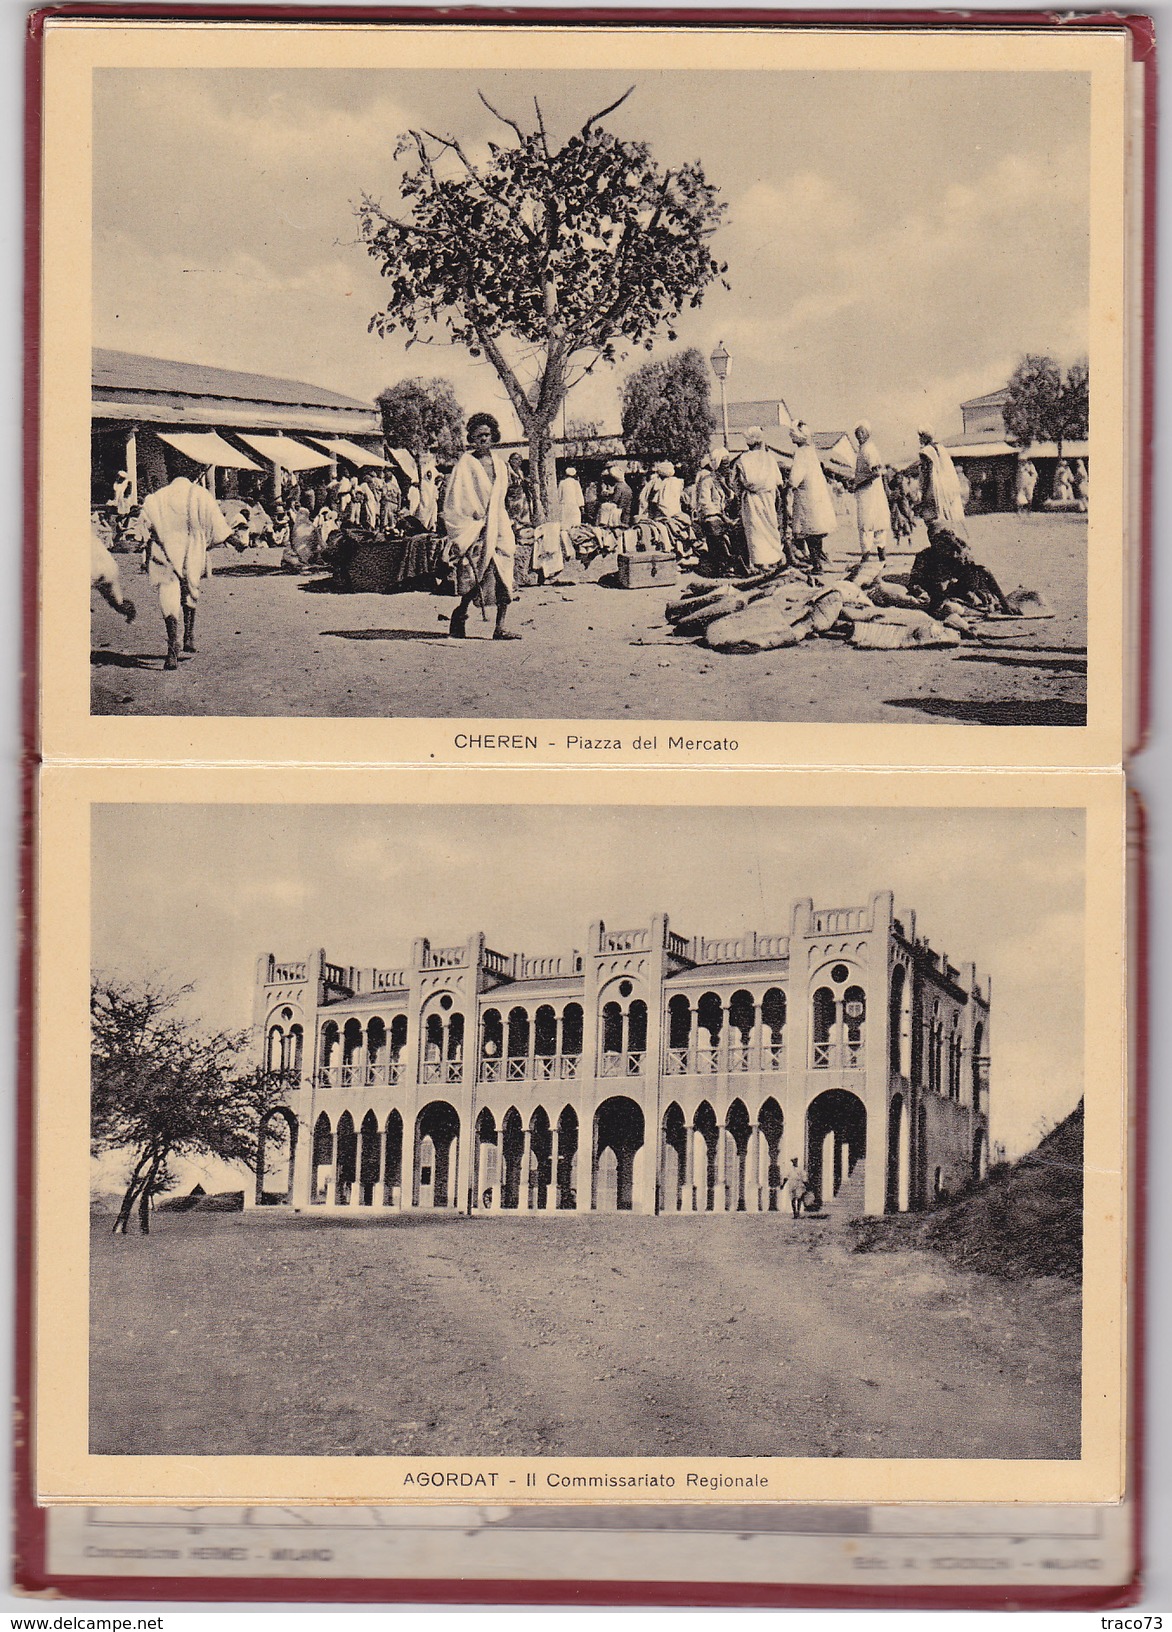 ASMARA - AFRICA ORIENTALE  / Ricordo in 32 vedutine con formato cartolina